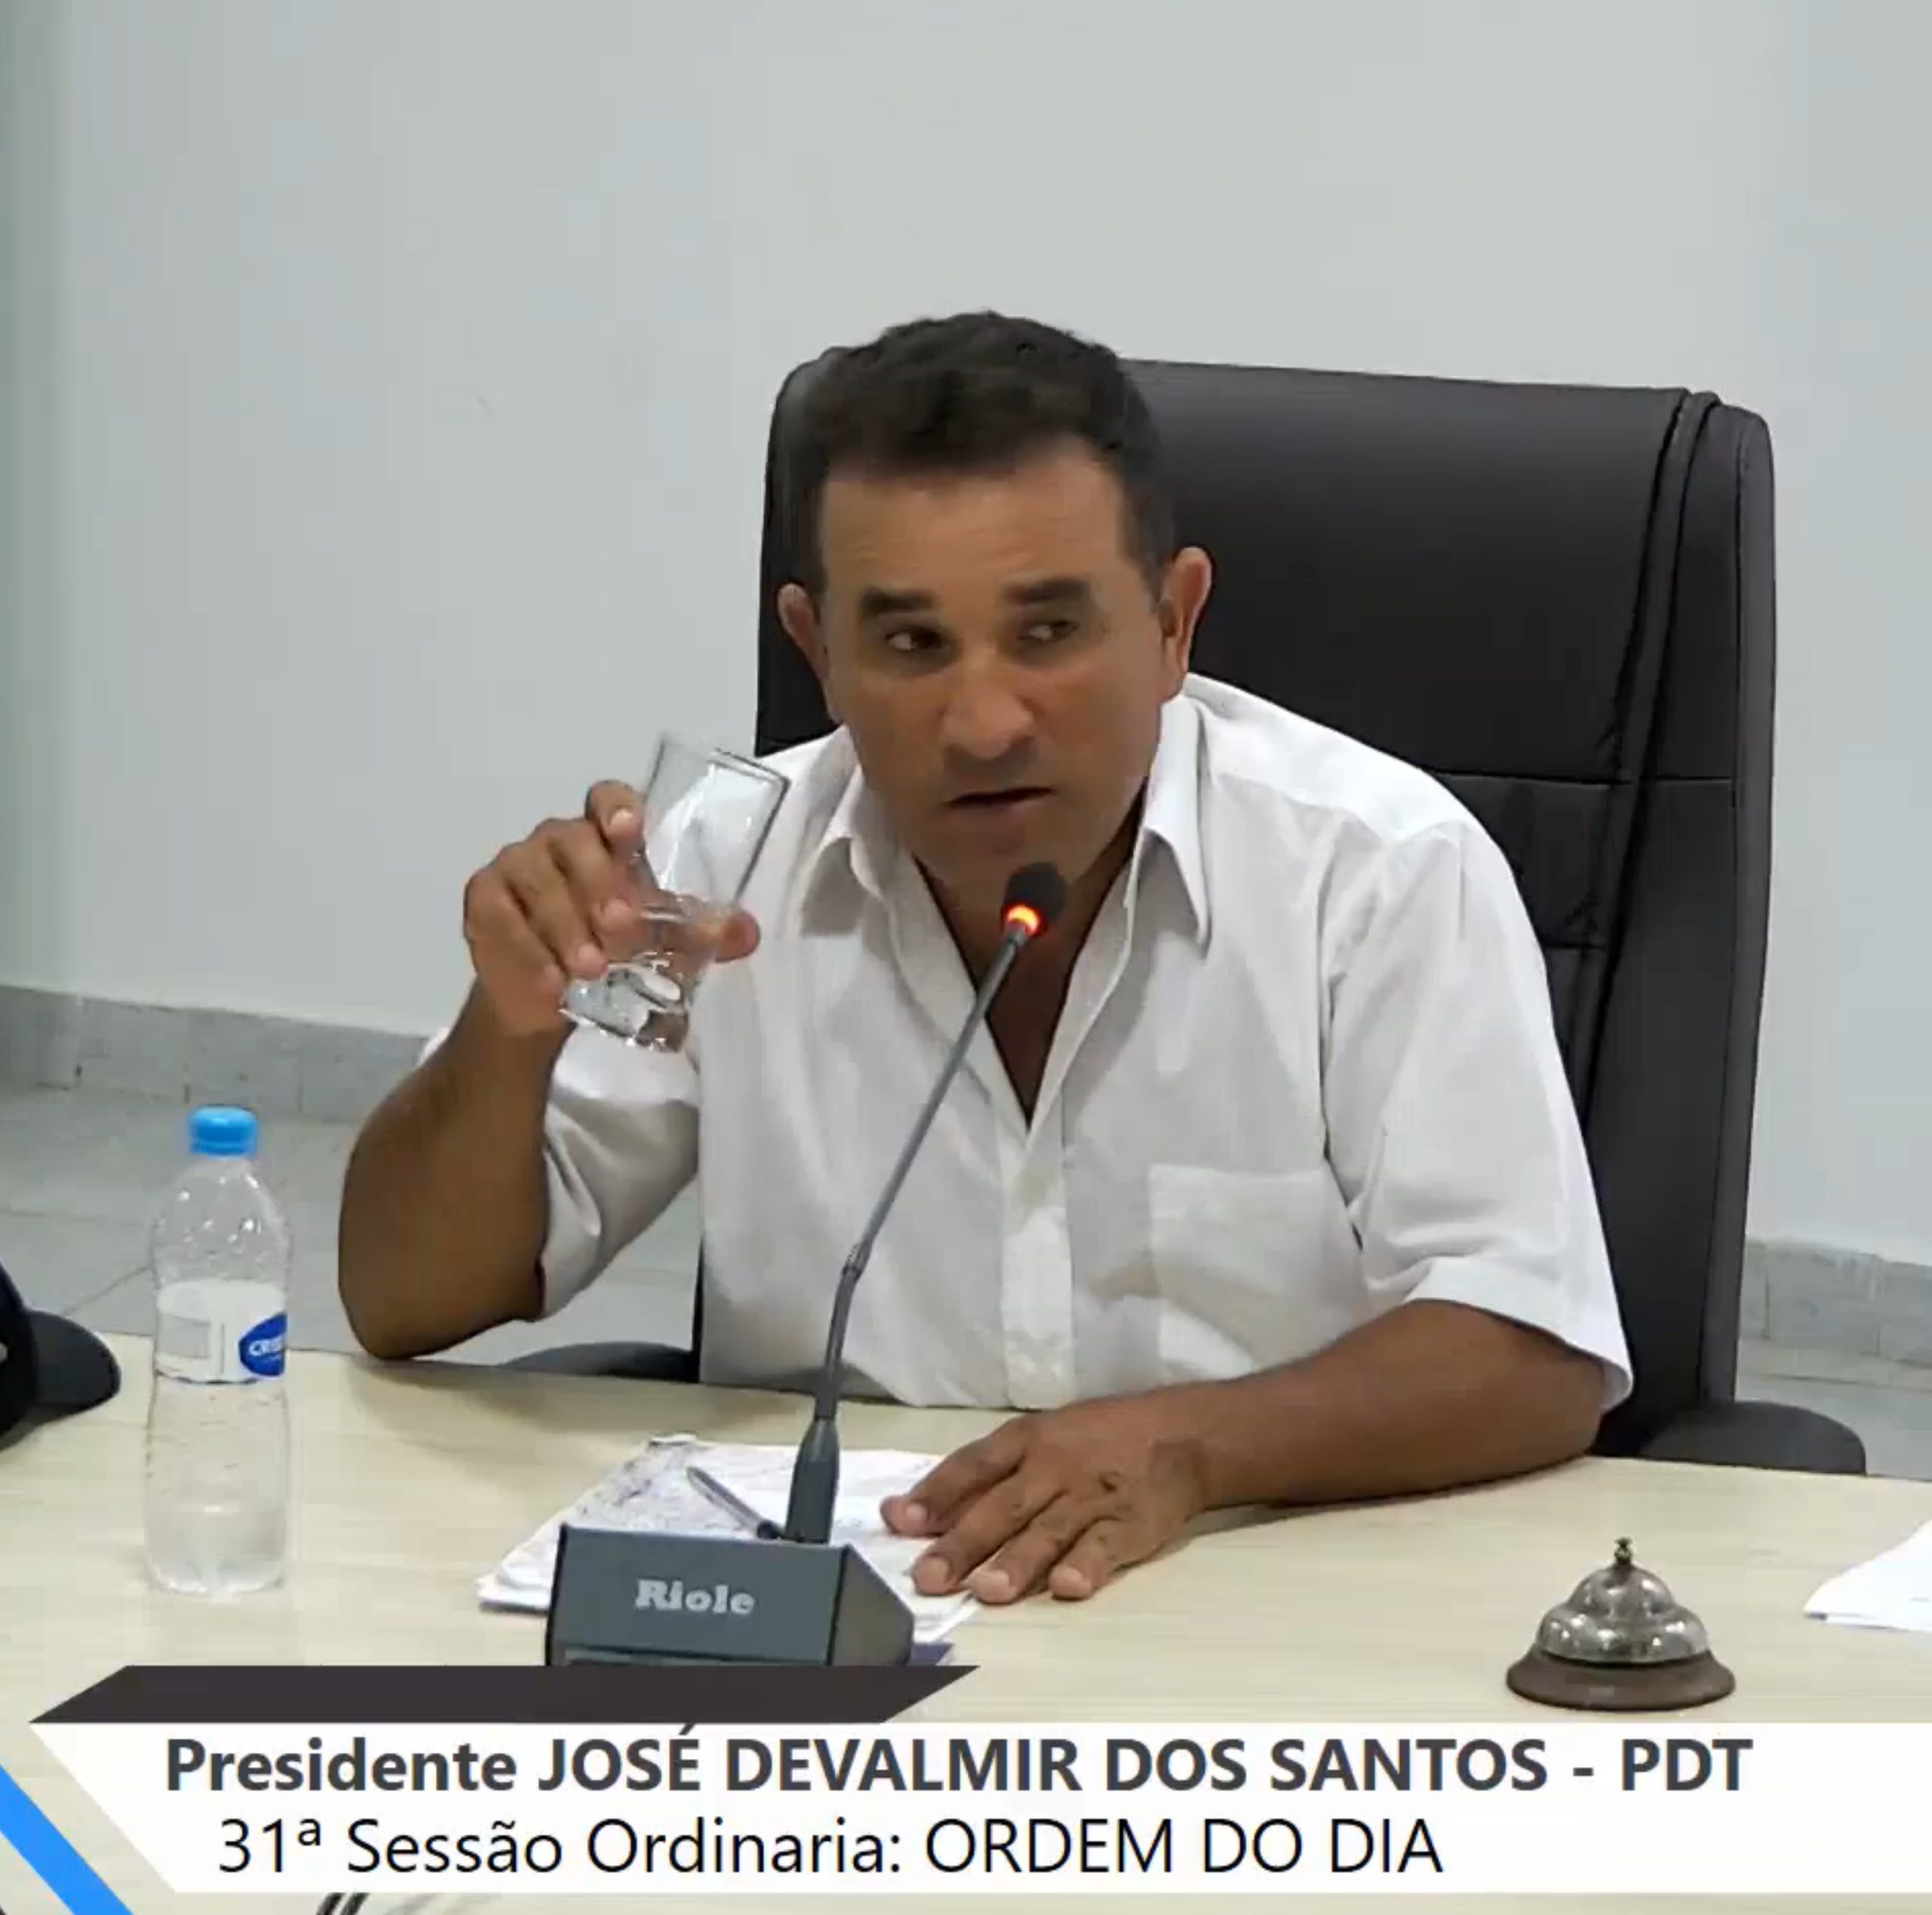  José Devalmir dos Santos baleado 